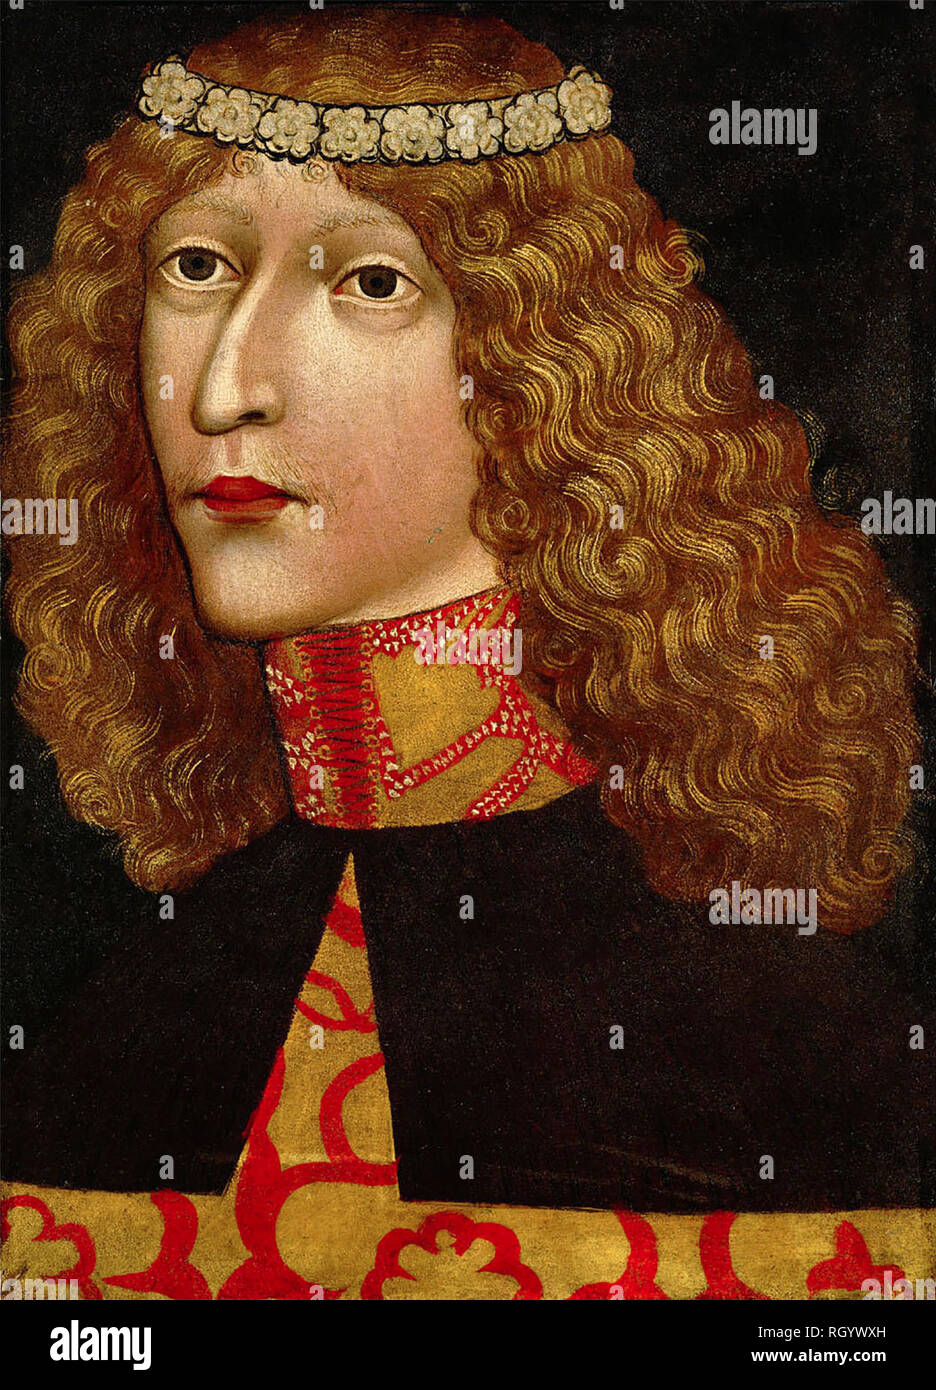 El rey Ladislao el póstumo, circa 1457. Ladislao el póstumo, conocido también como Ladislas, fue el duque de Austria y rey de Hungría, Croacia y Bohemia Foto de stock